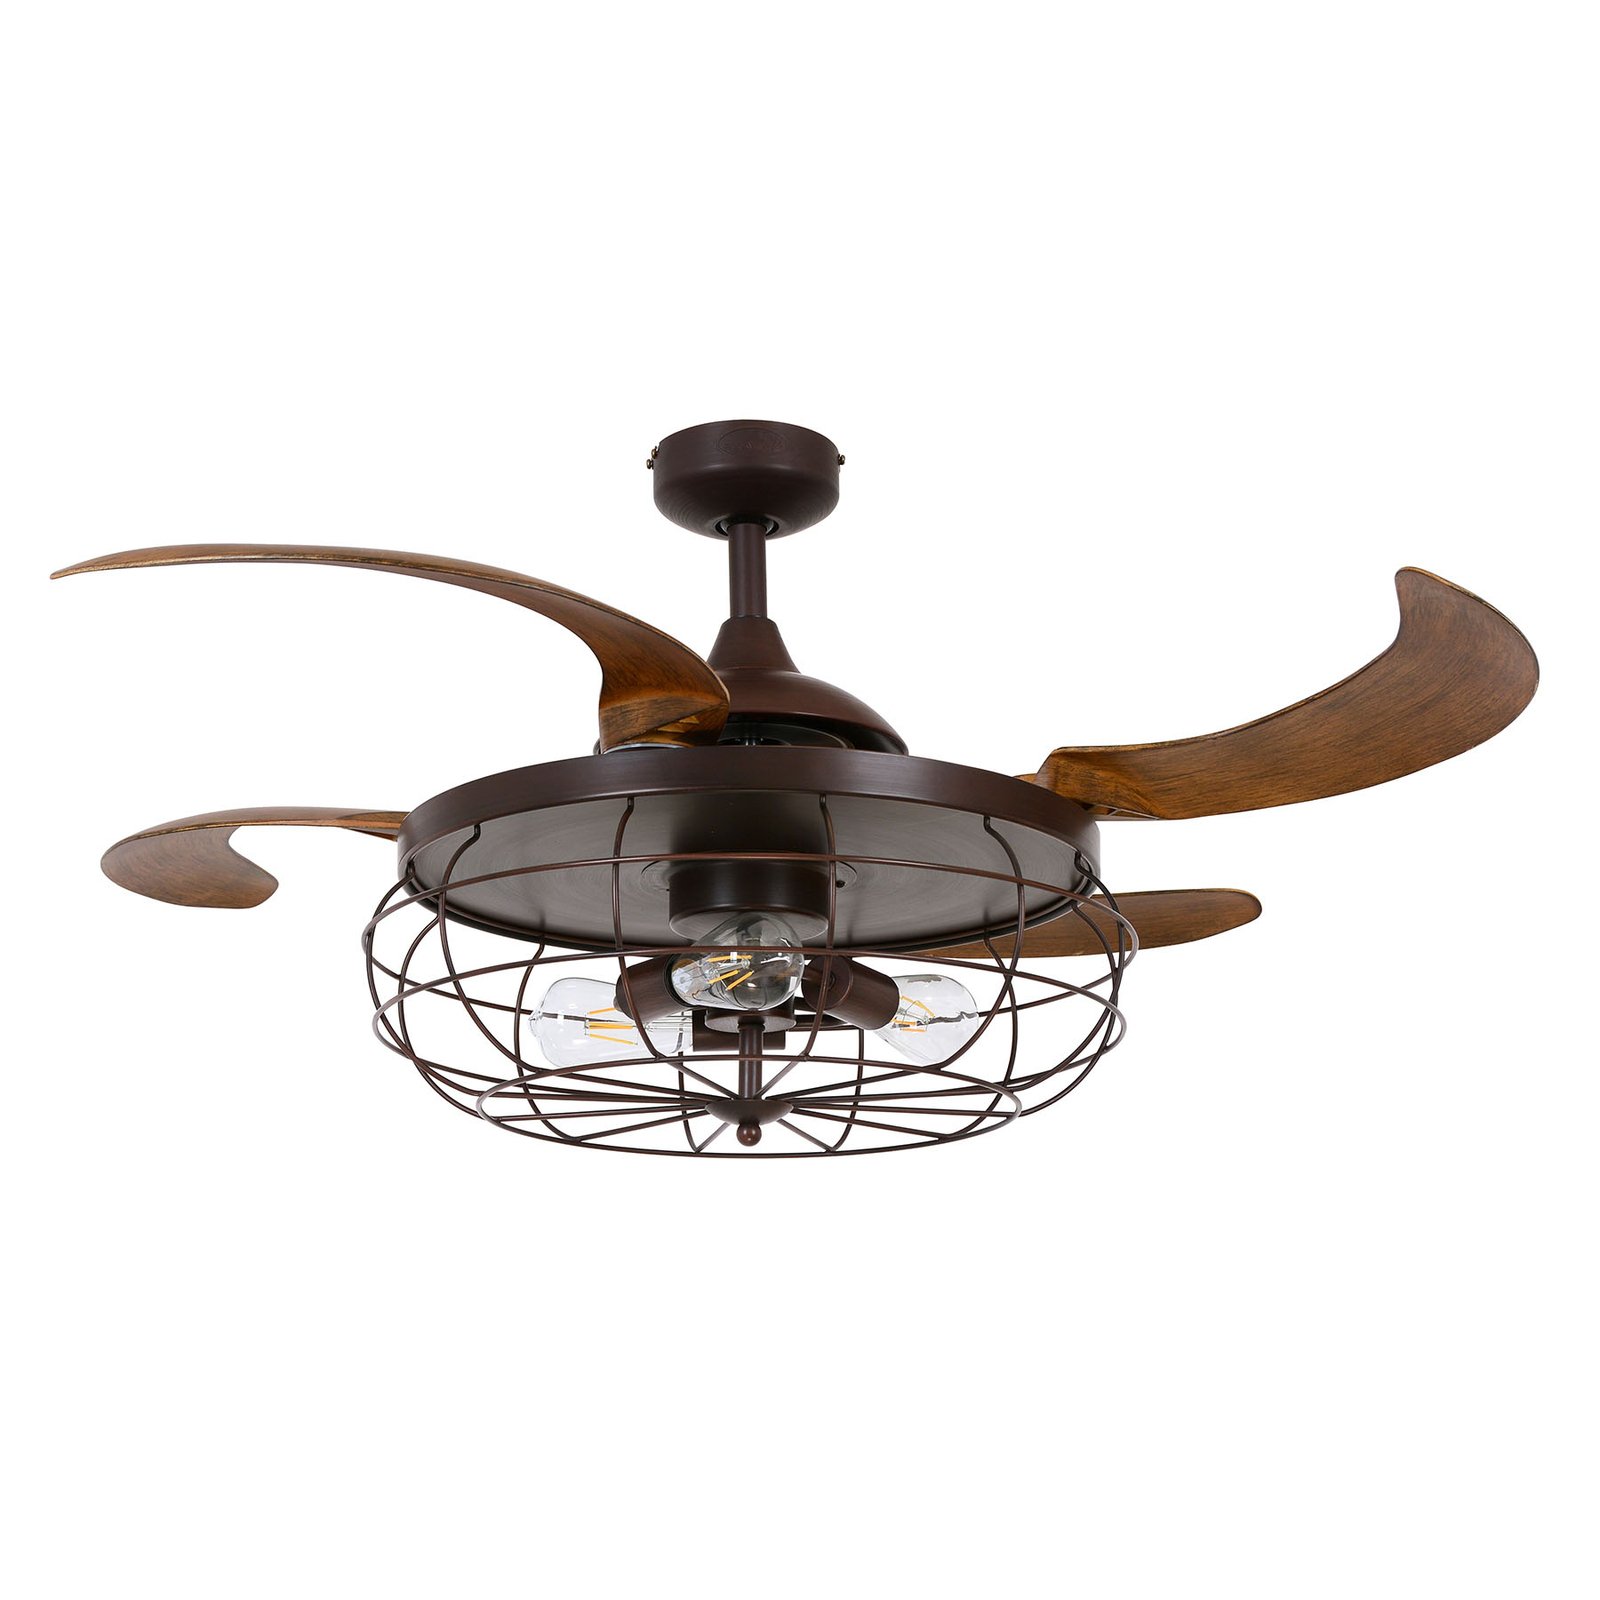 Fanaway Industri ceiling fan, light, brown